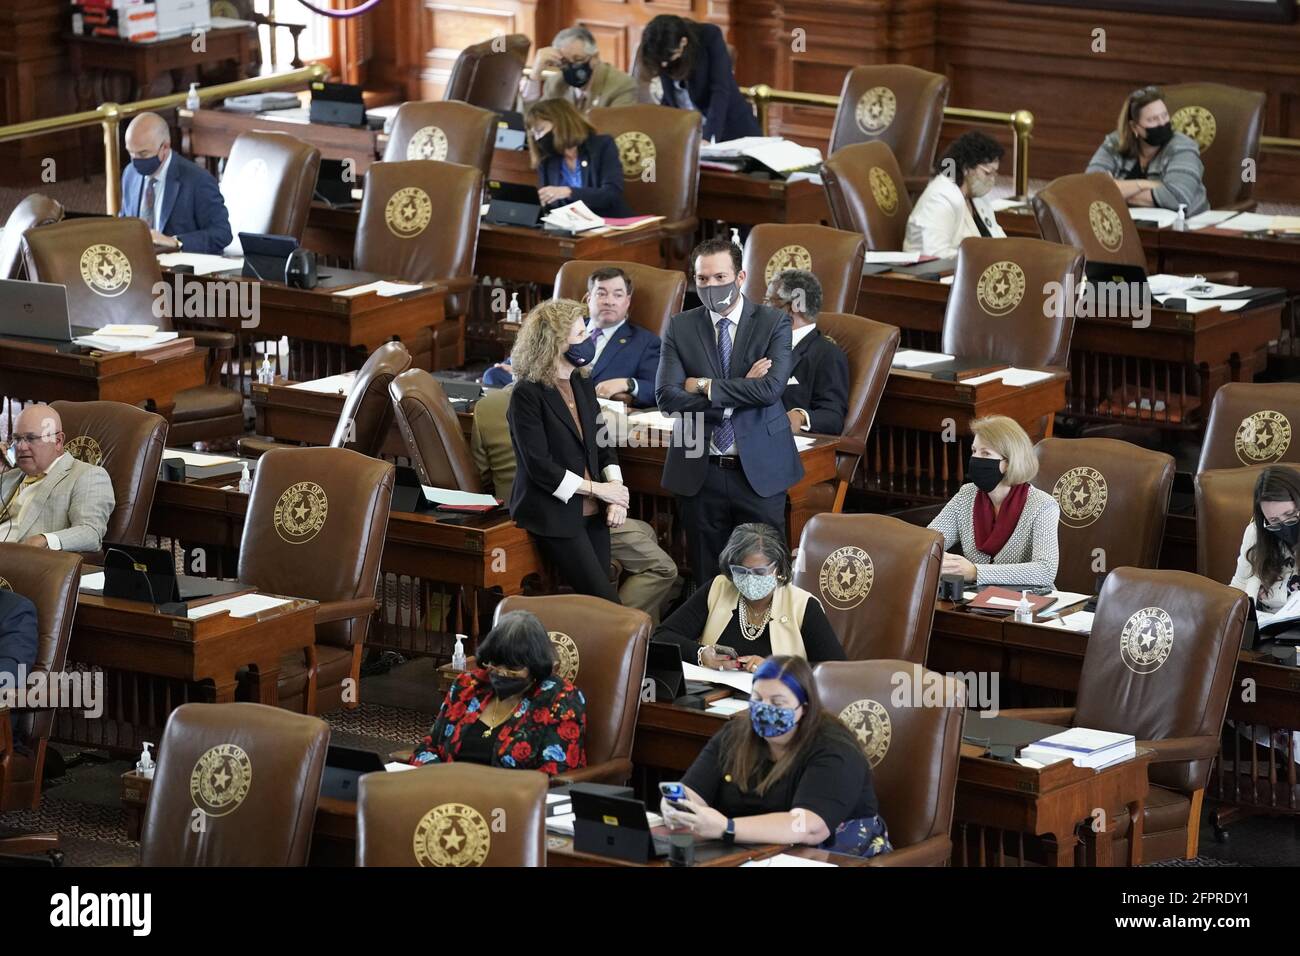 Les législateurs de la Maison du Texas travaillent à négocier, à rédiger des lois et à adopter des projets de loi à la 87e session de l'Assemblée législative du Texas à Austin. Chacun des 150 membres est élu pour un mandat de deux ans. Banque D'Images